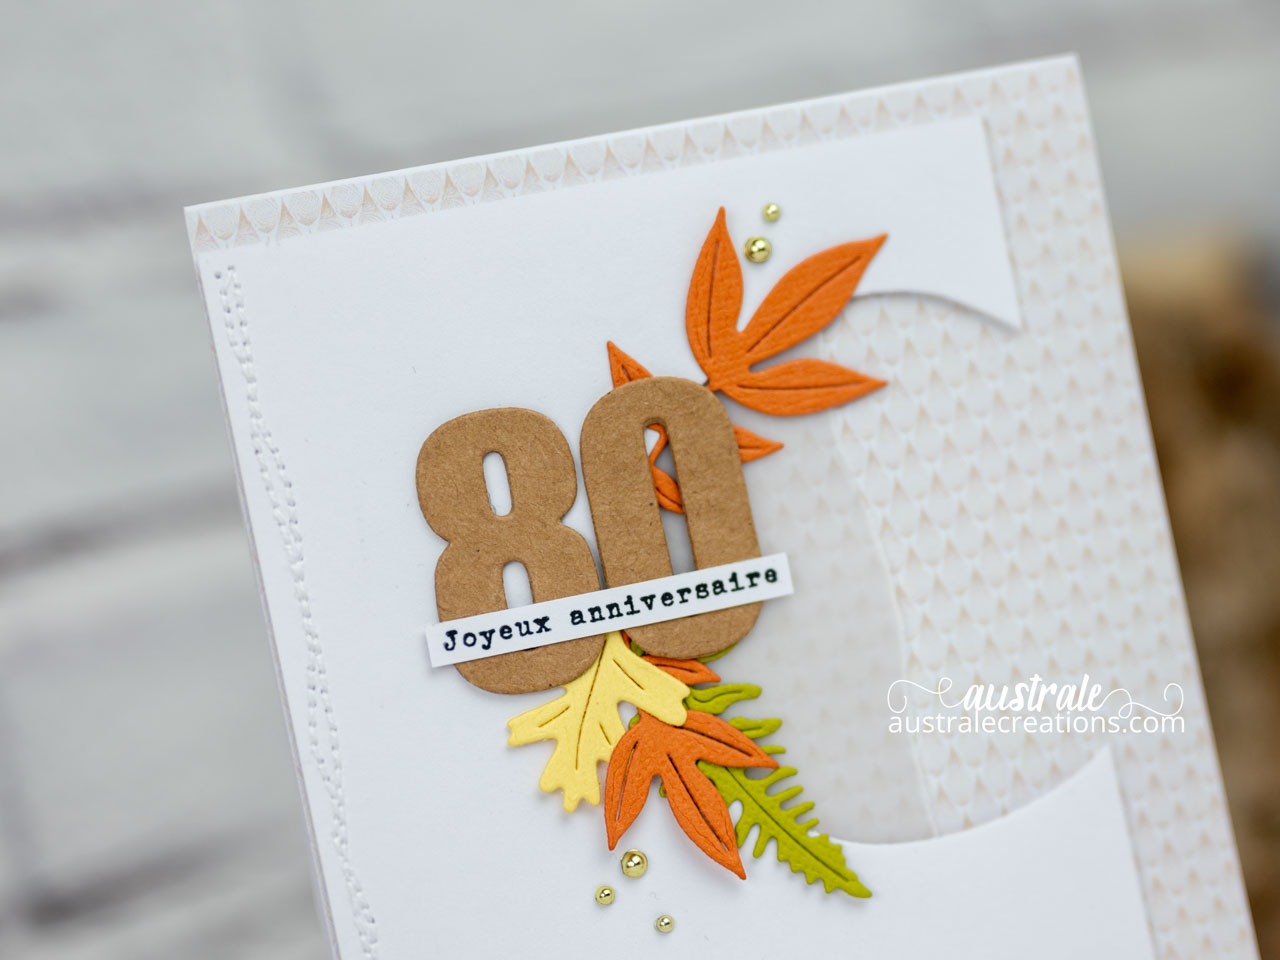 Création d'une carte d'anniversaire avec feuillages et combo d'automne et le chiffre 80 pour souligner l'âge.